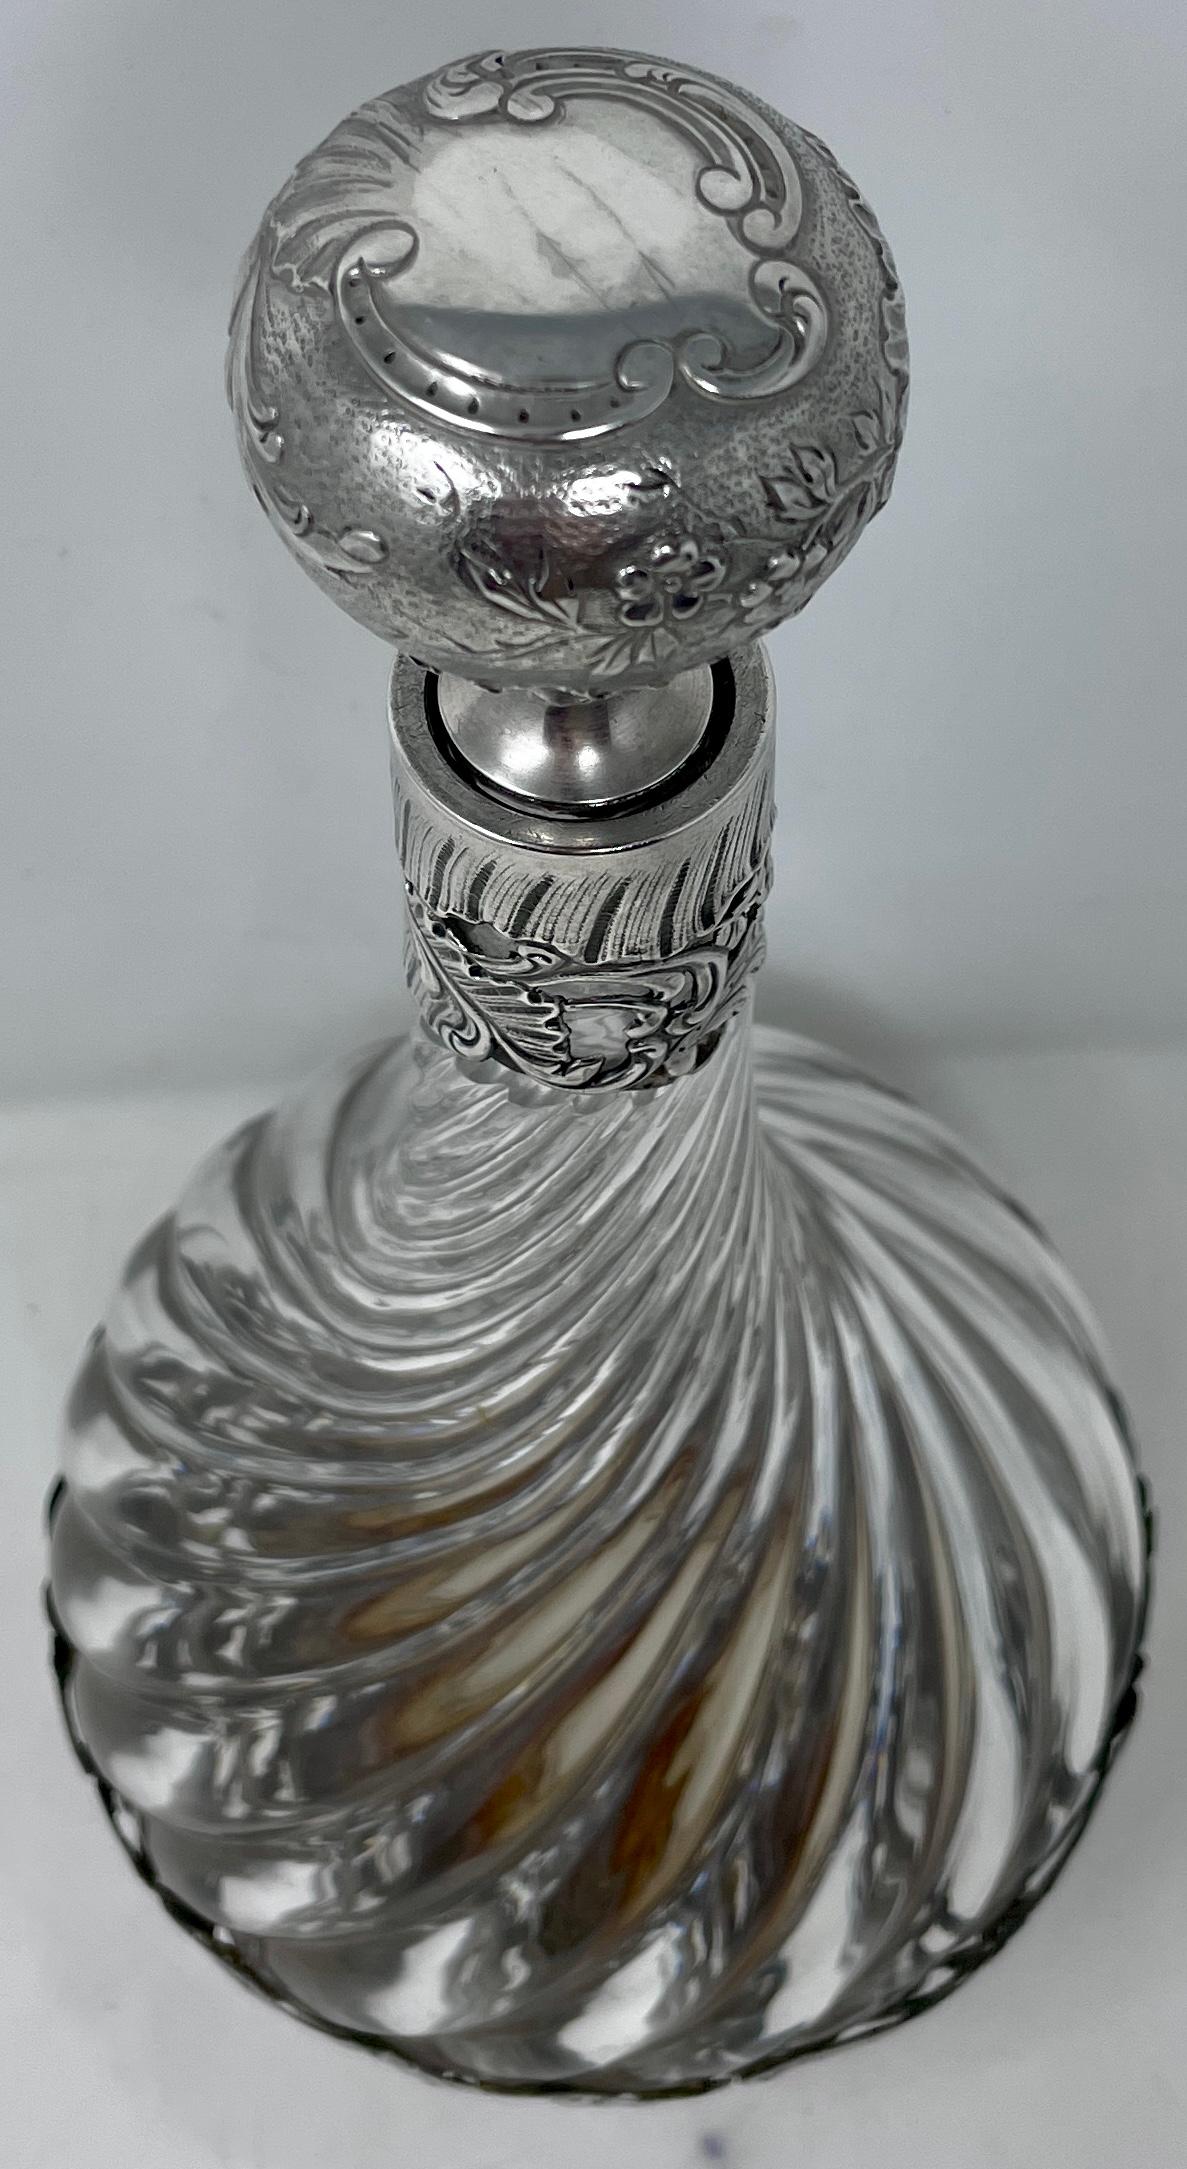 Antike französische Flasche aus geschliffenem Baccarat-Kristall mit Silberauflage, ca. 1825-1835.